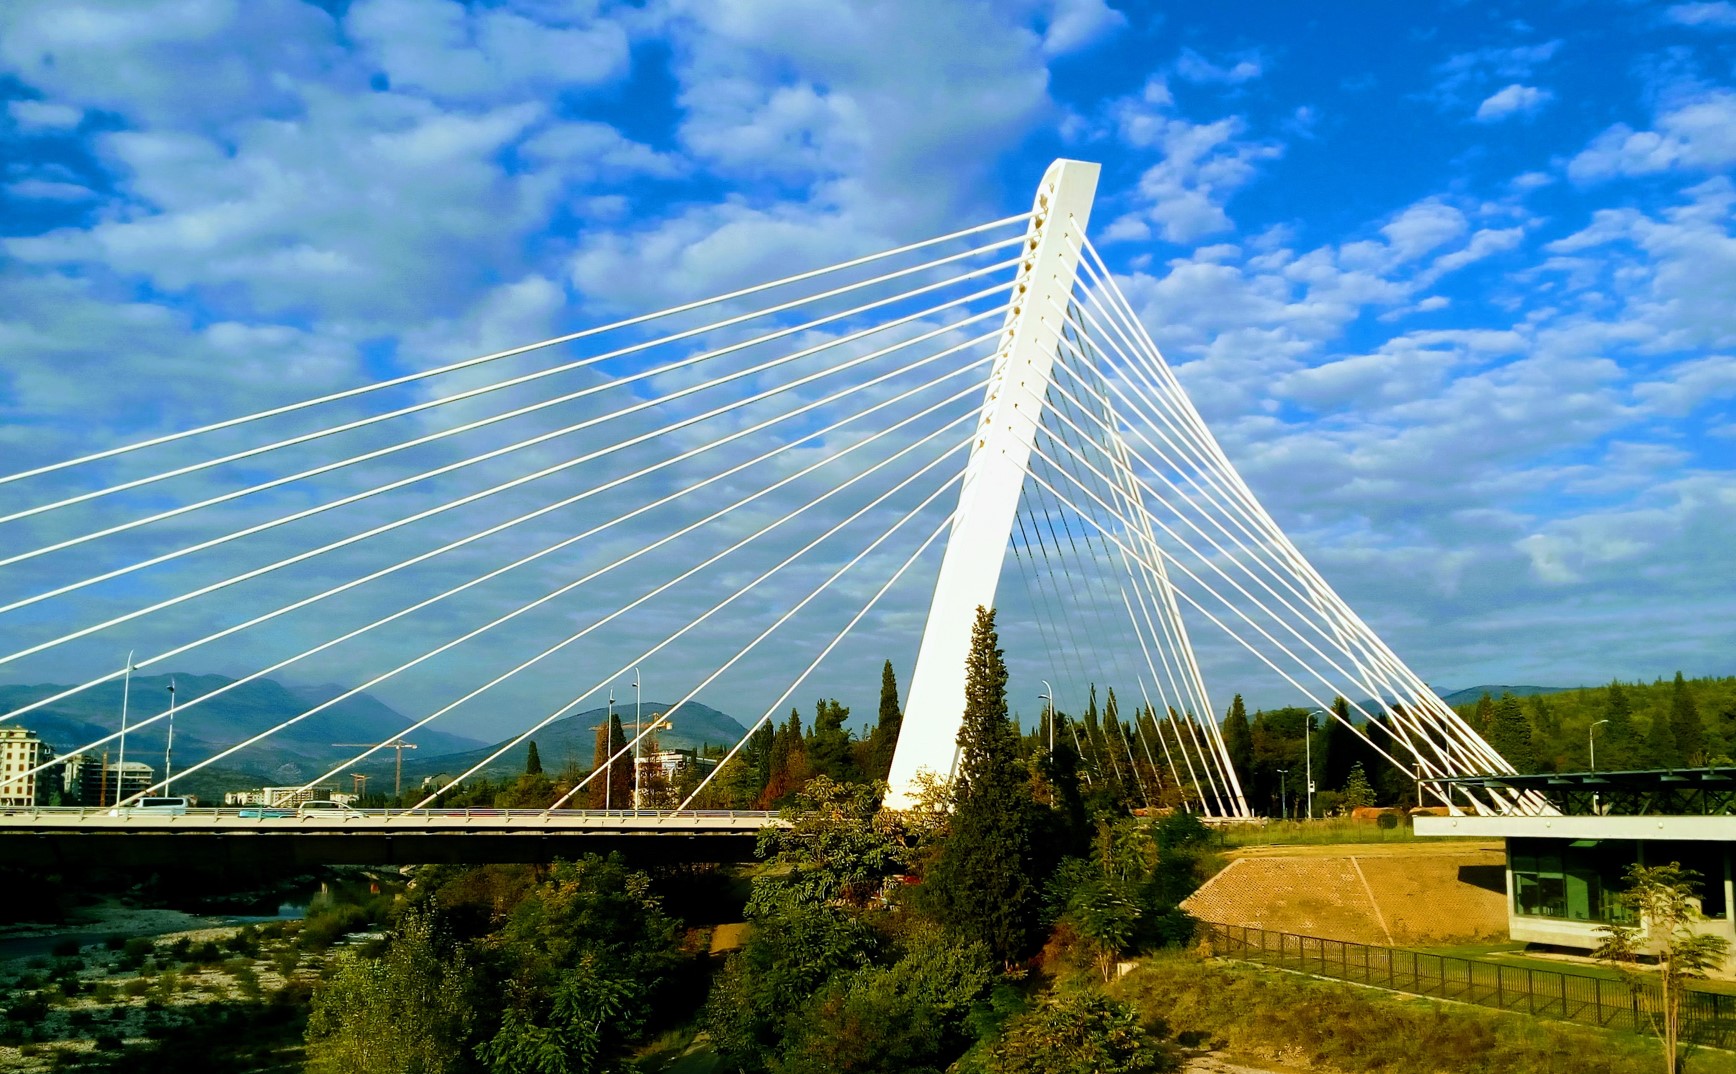 Podgorica sights - Millennium Bridge